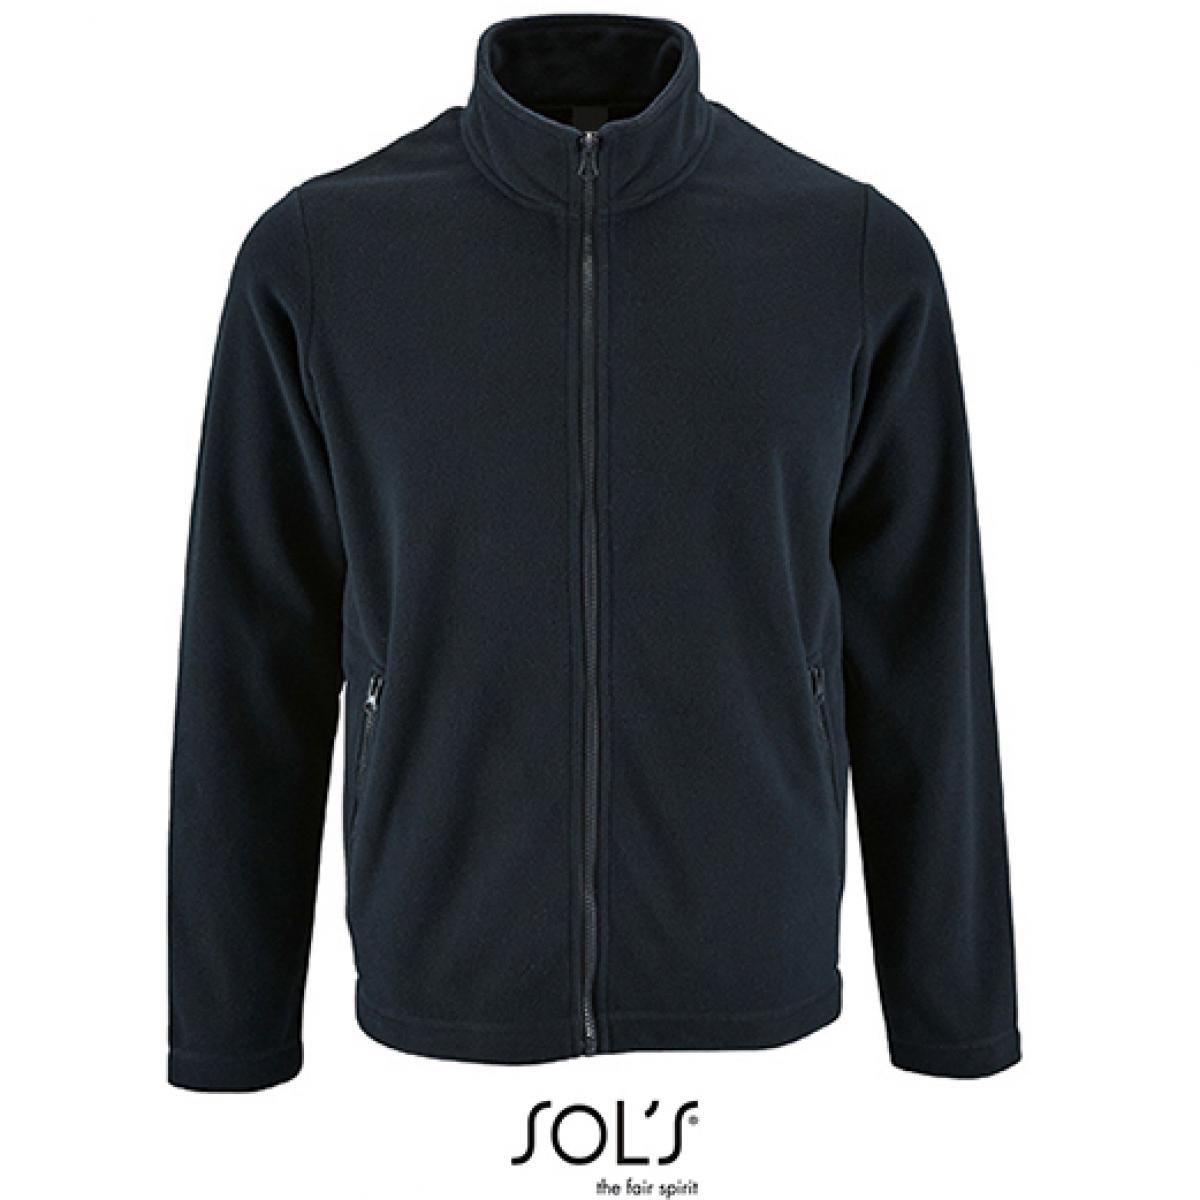 Hersteller: SOLs Herstellernummer: 02093 Artikelbezeichnung: Herren Plain Fleece Jacket Norman Farbe: Navy